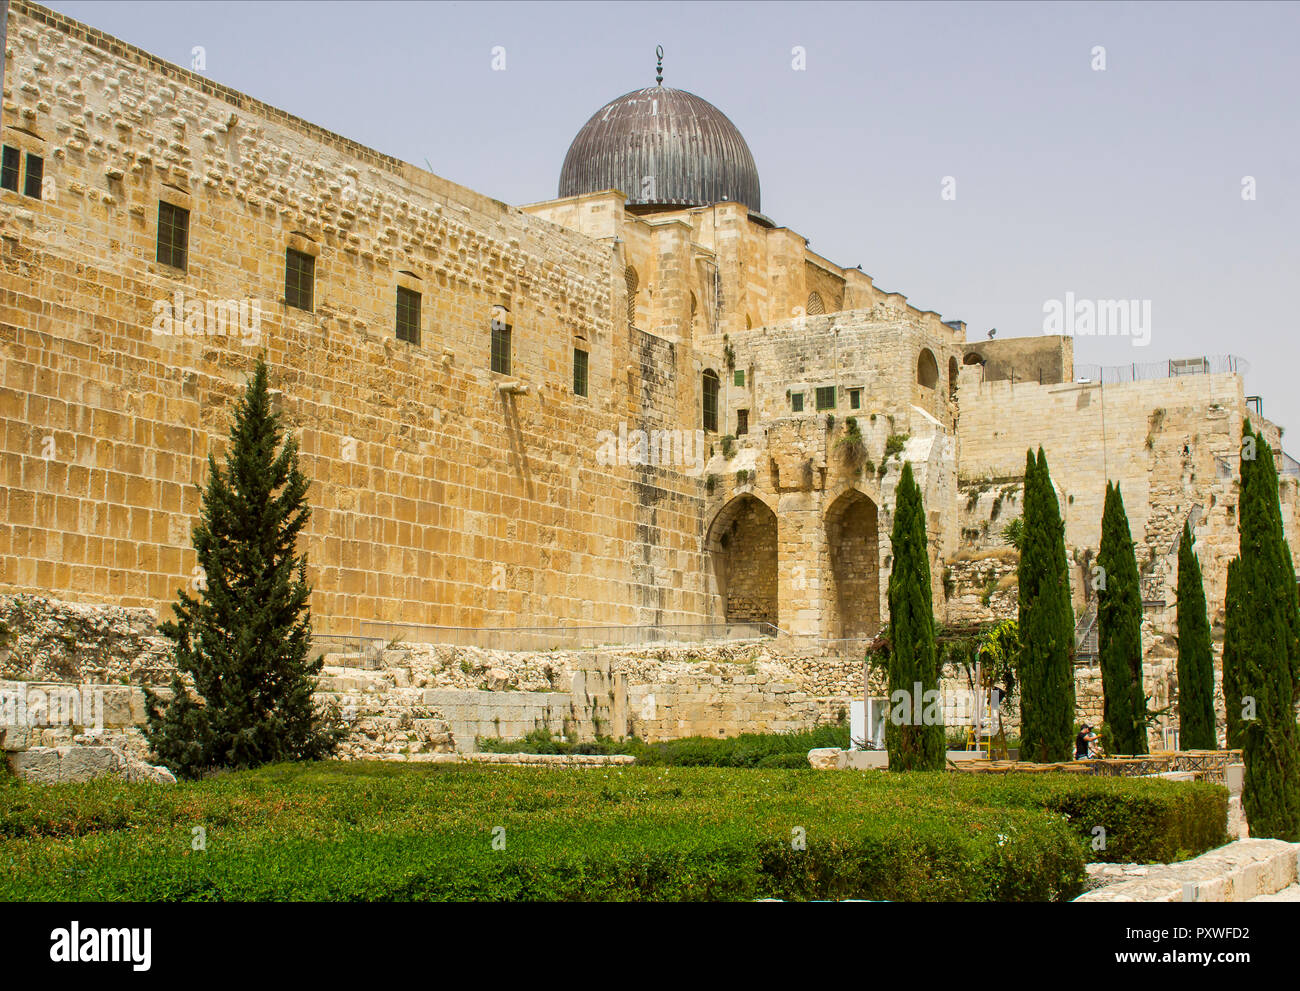 La cupola della moschea Al Aqsa sul Monte theTemple in Gerusalemme con parte della parete meridionale del tempio antico monte Foto Stock